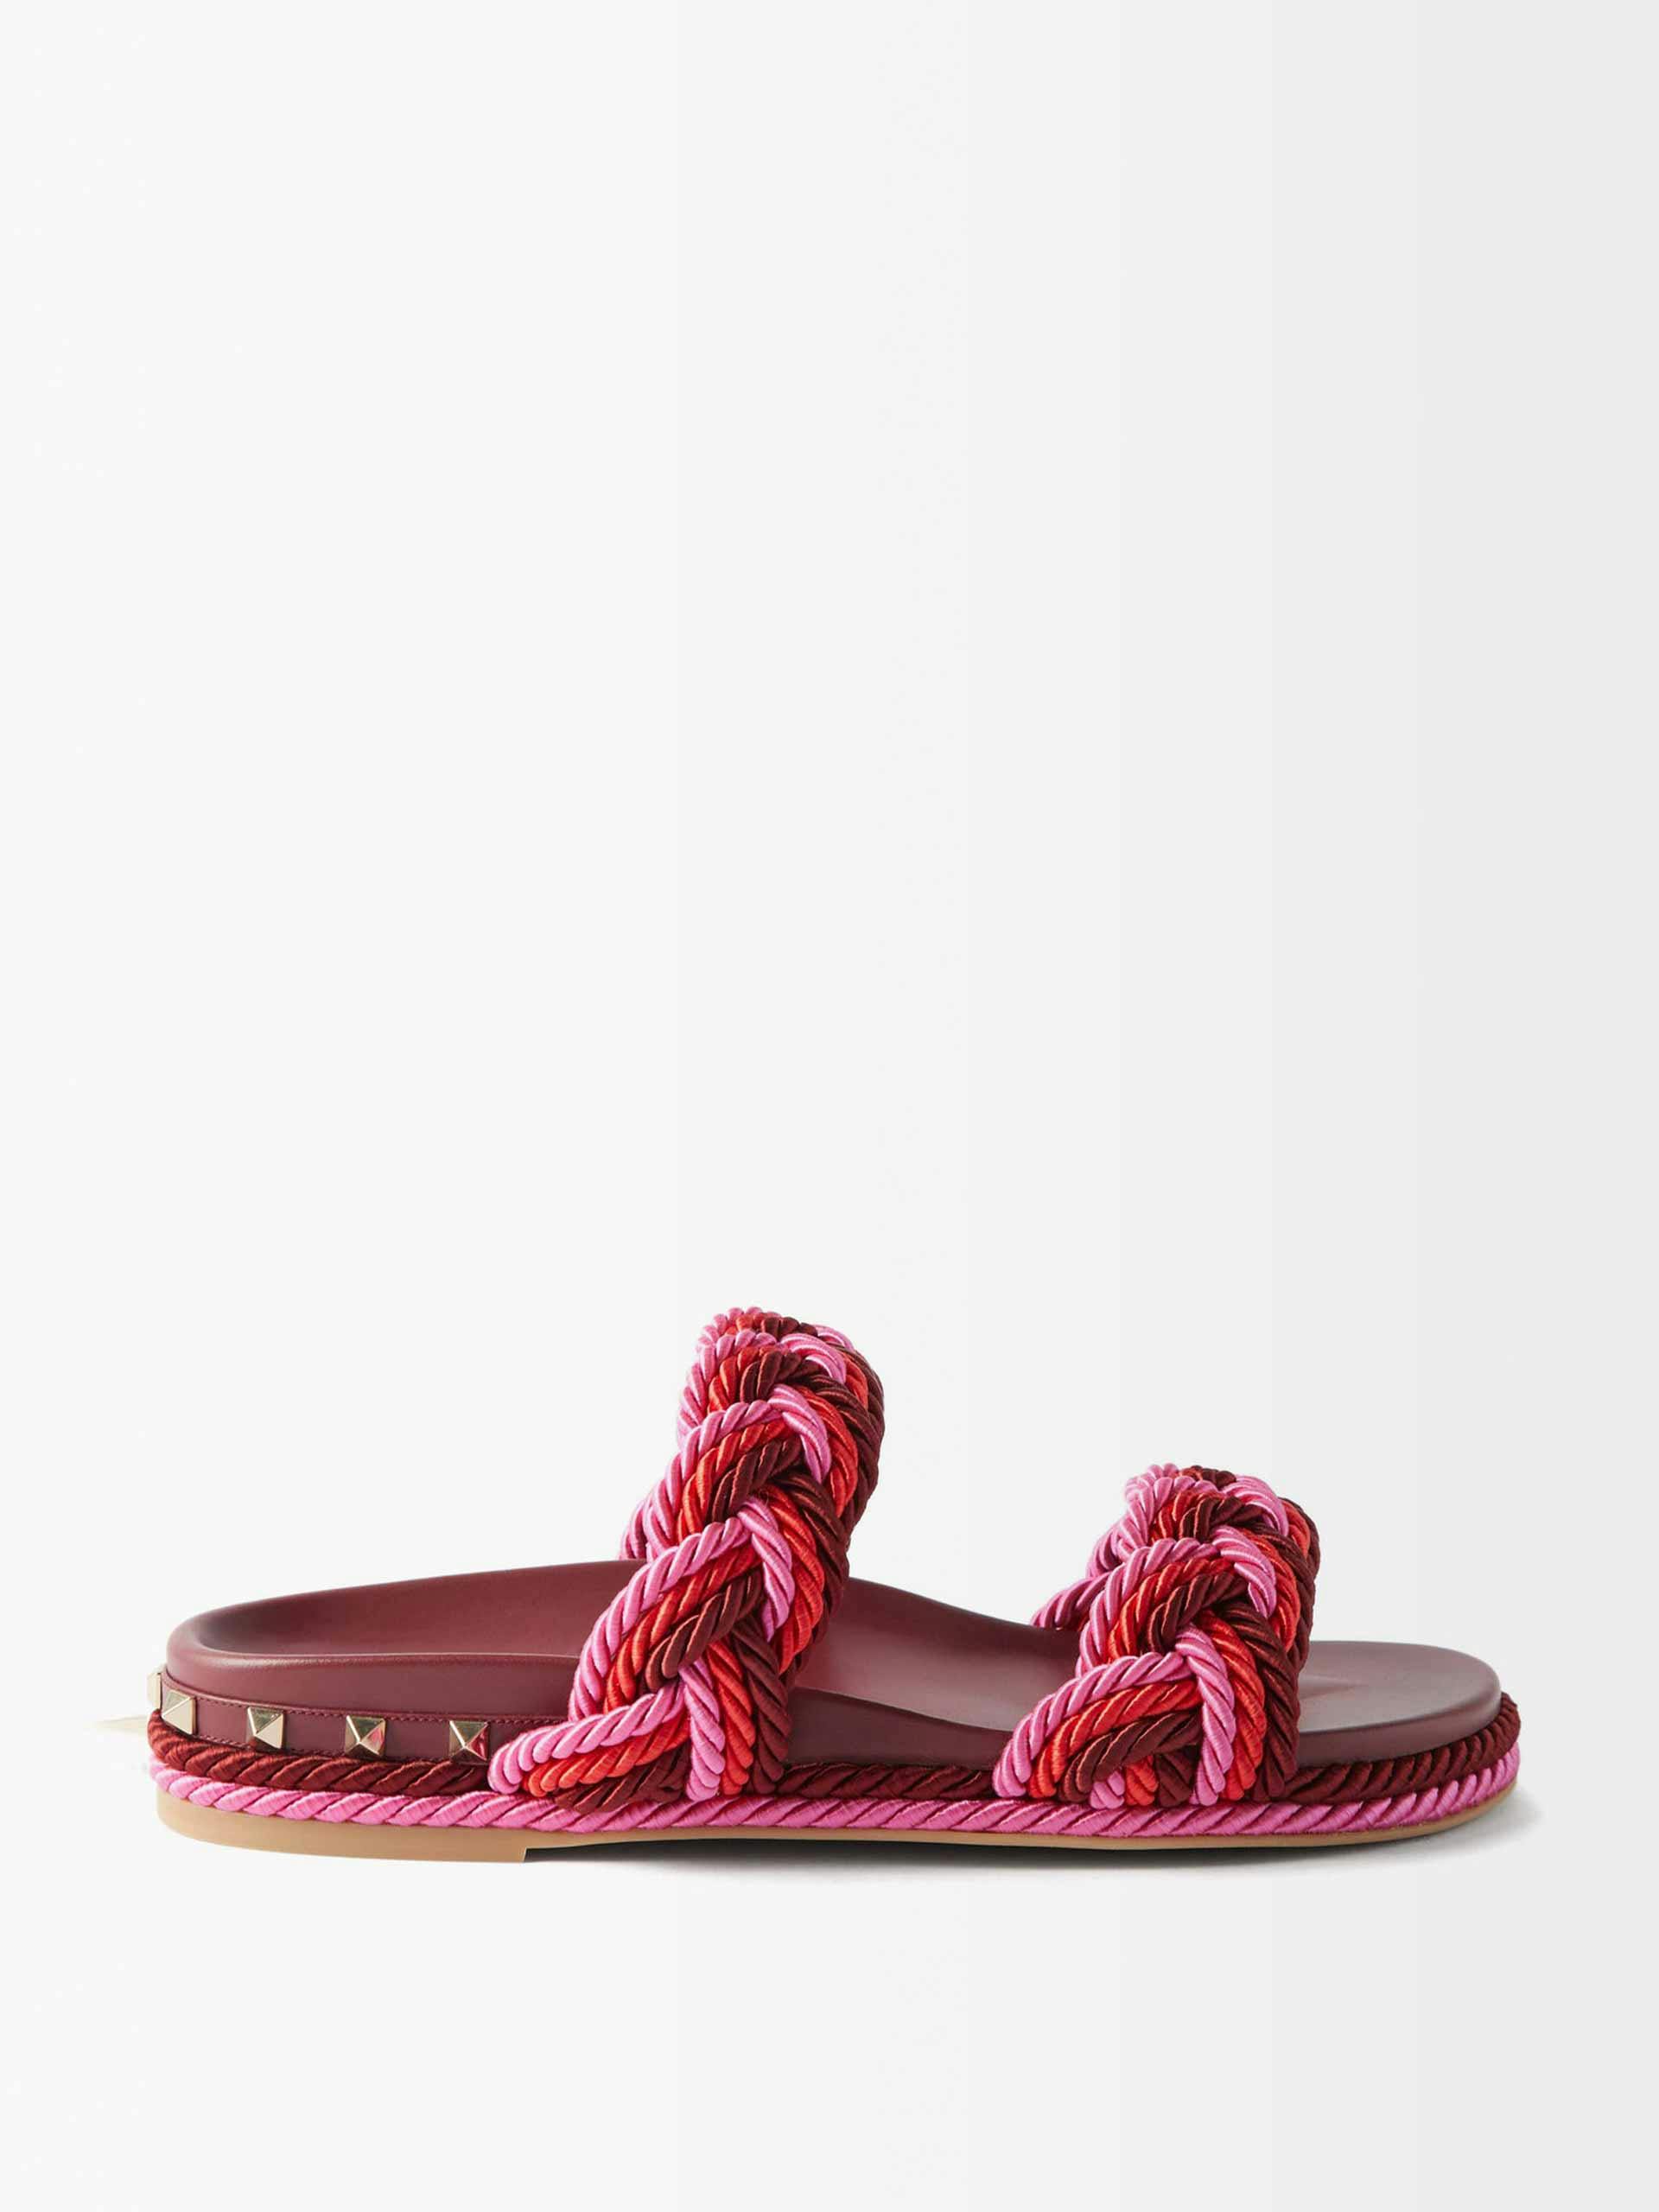 Burgundy braided strap sandals